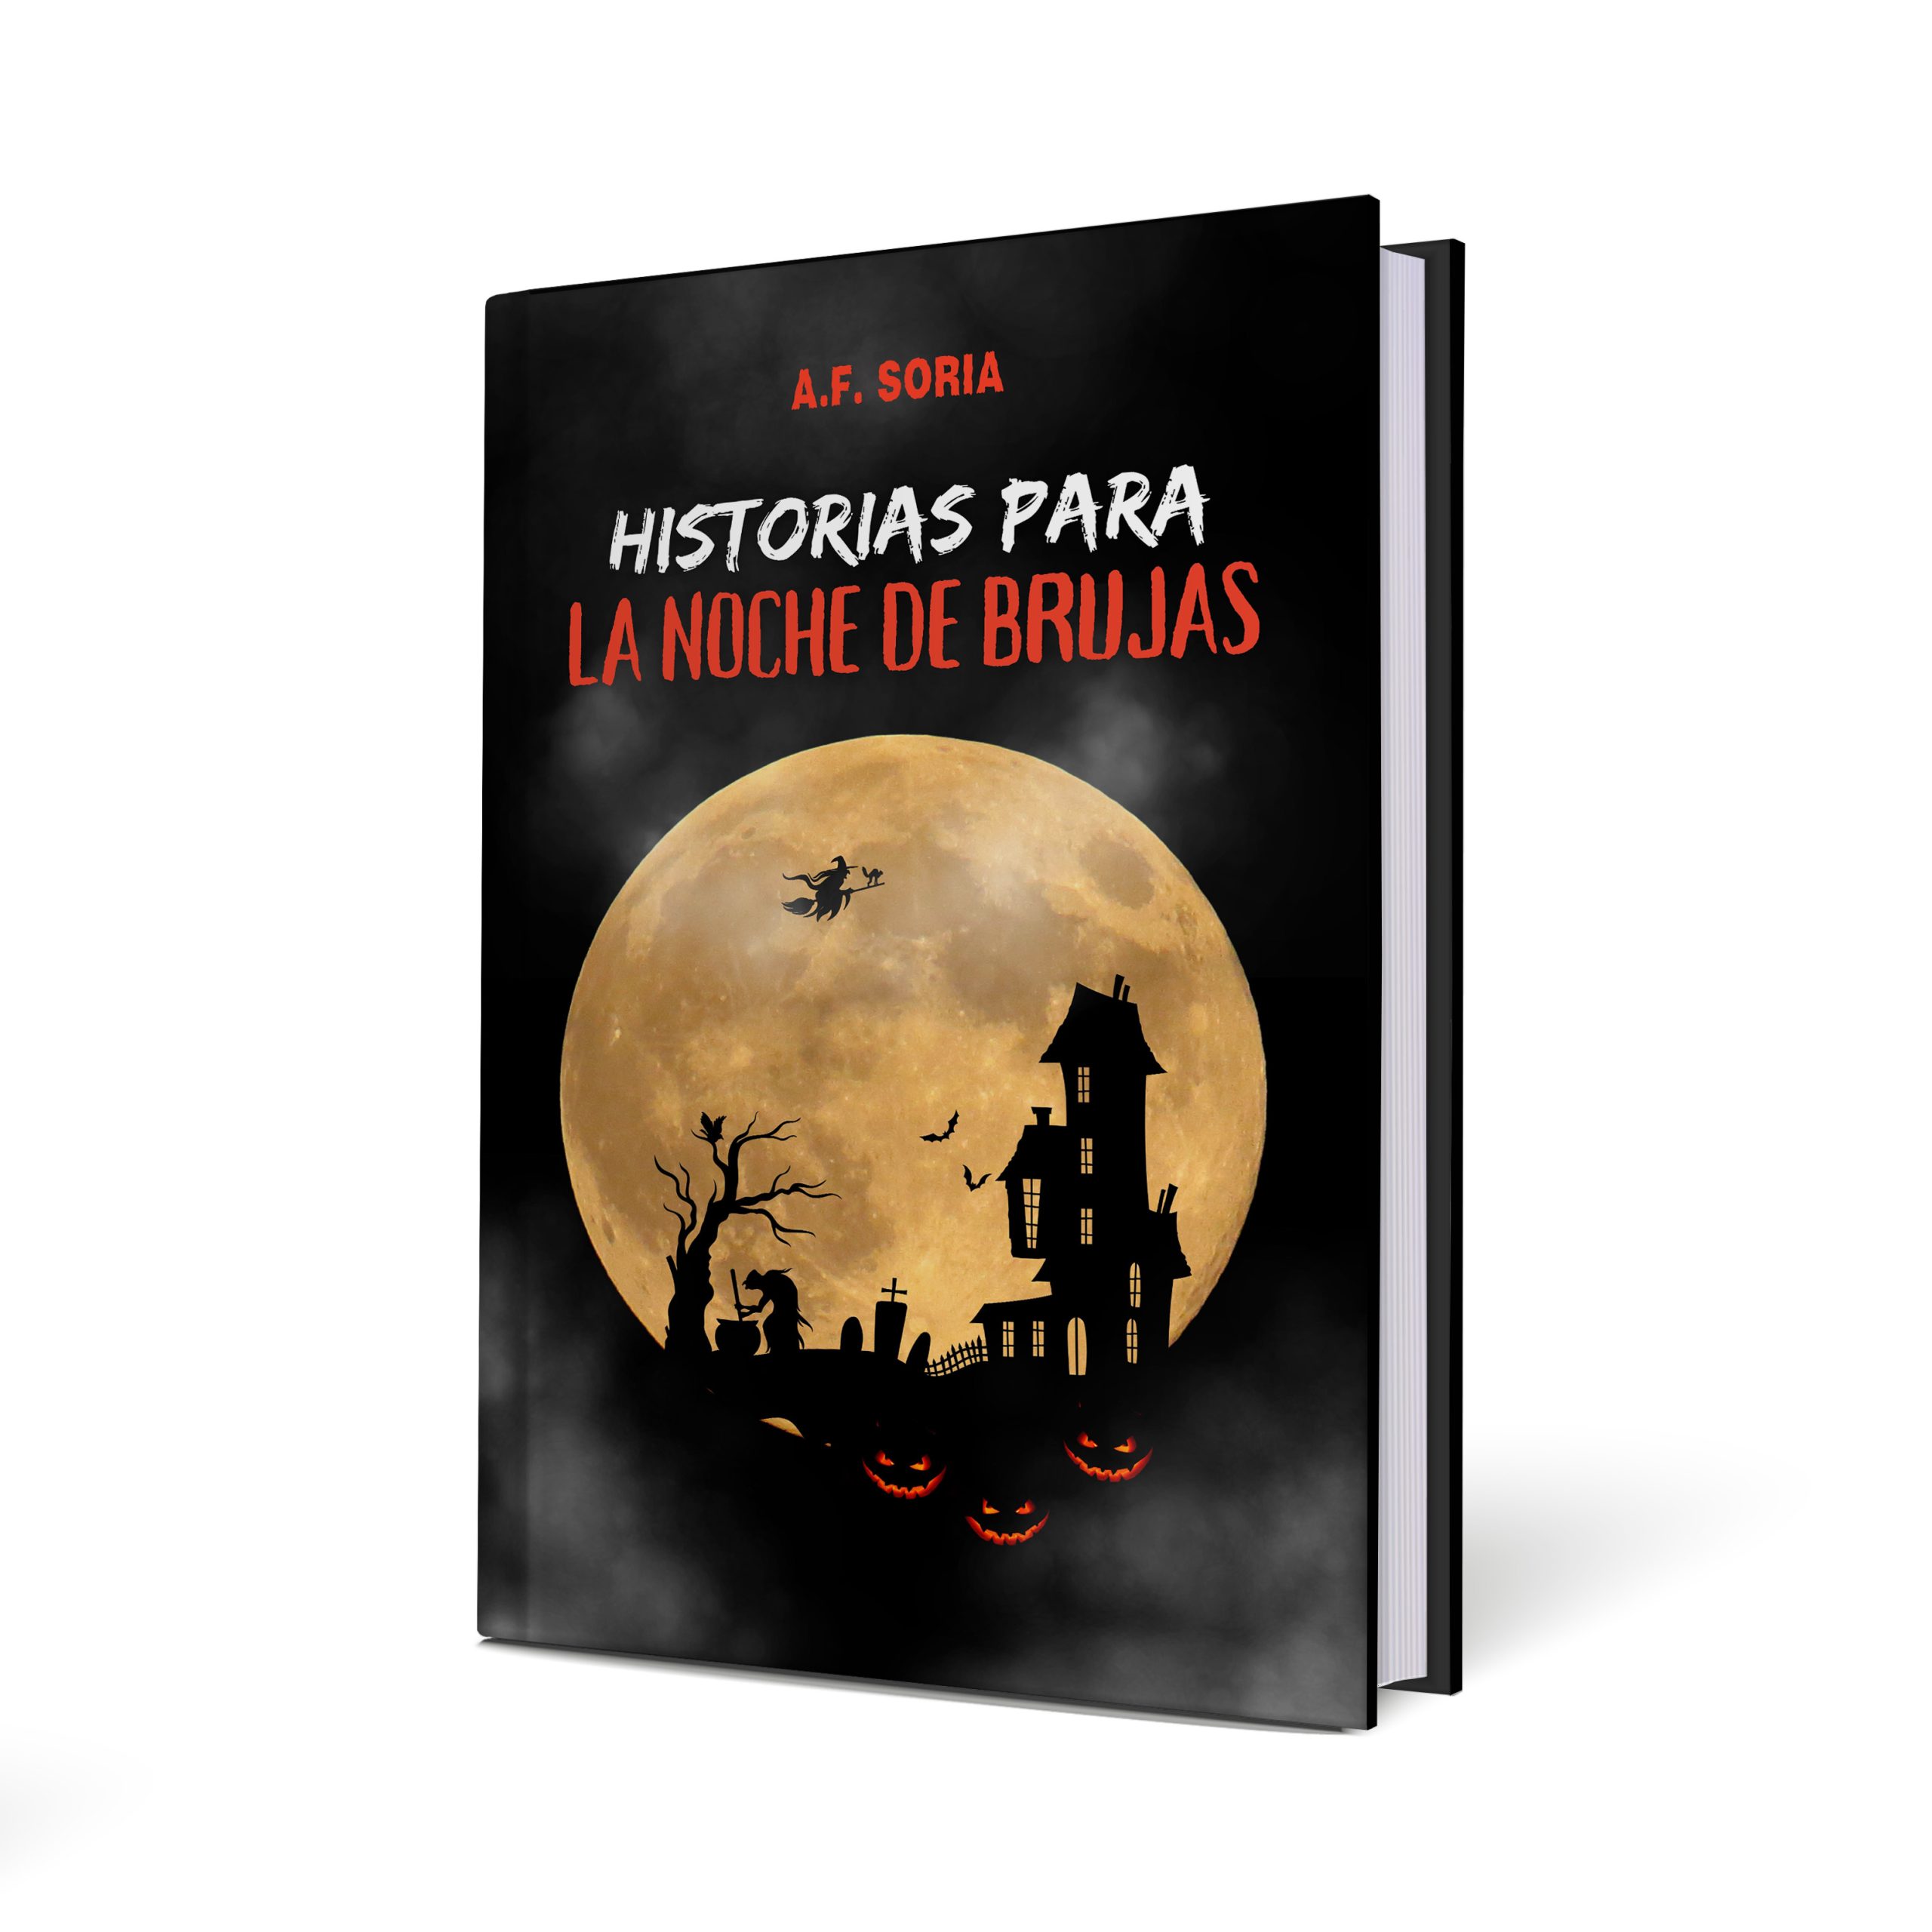 A.F. Soria “Historias para la Noche de Brujas”